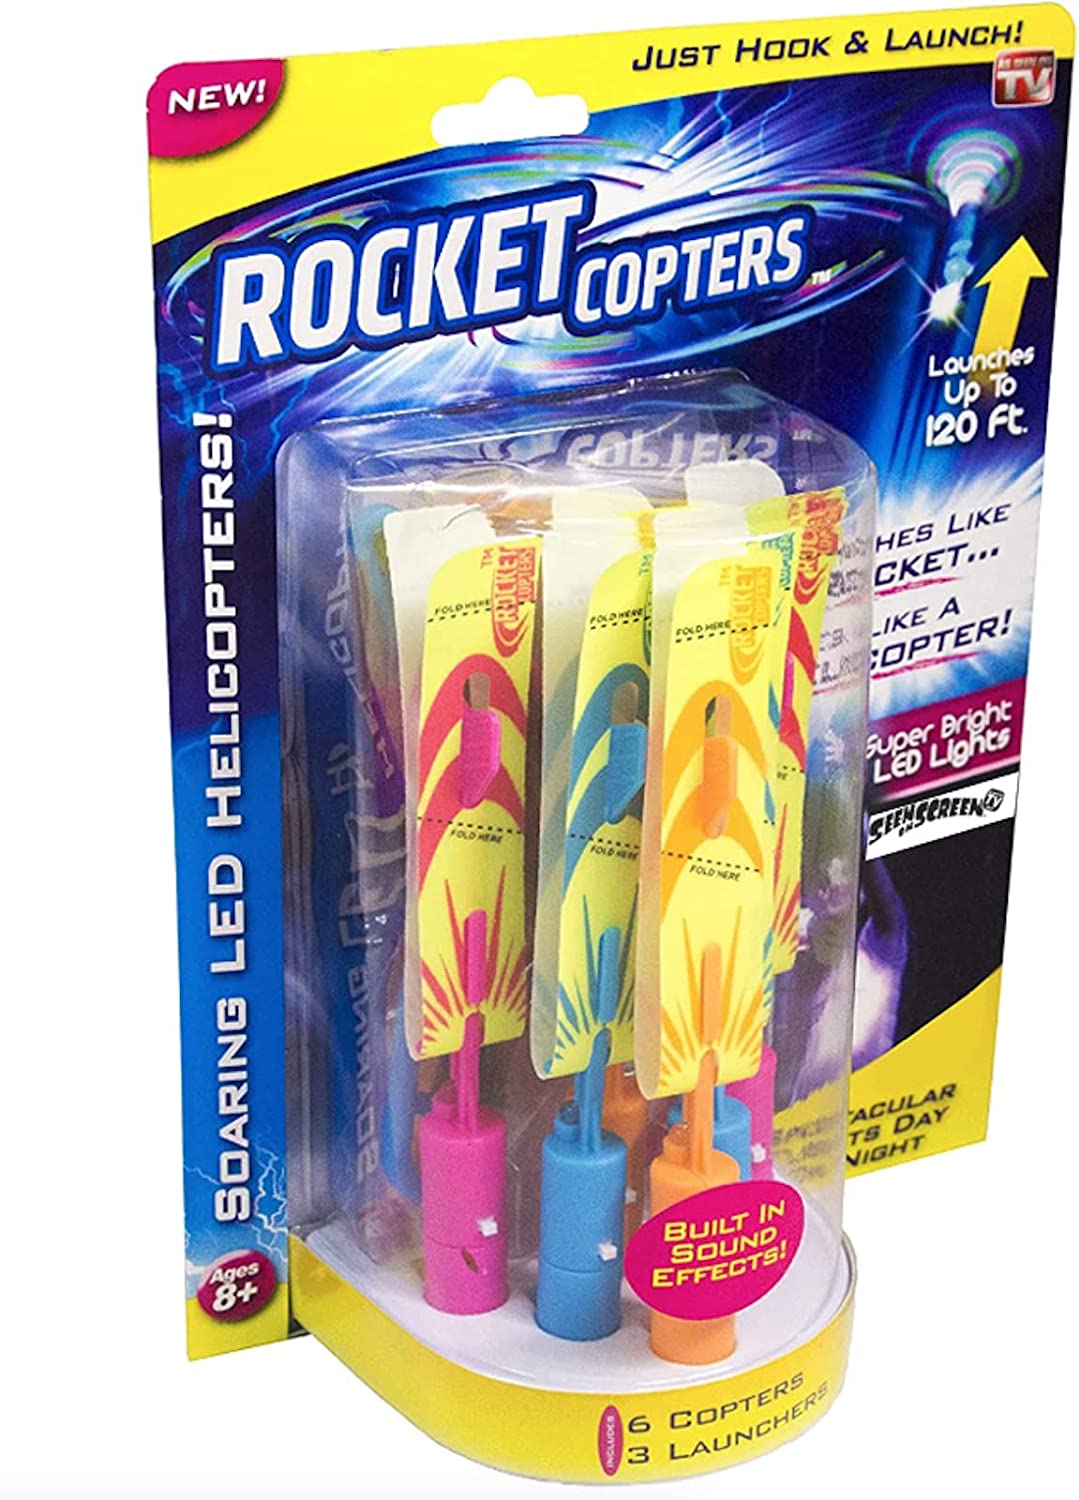 Rocket Copters Slingshot